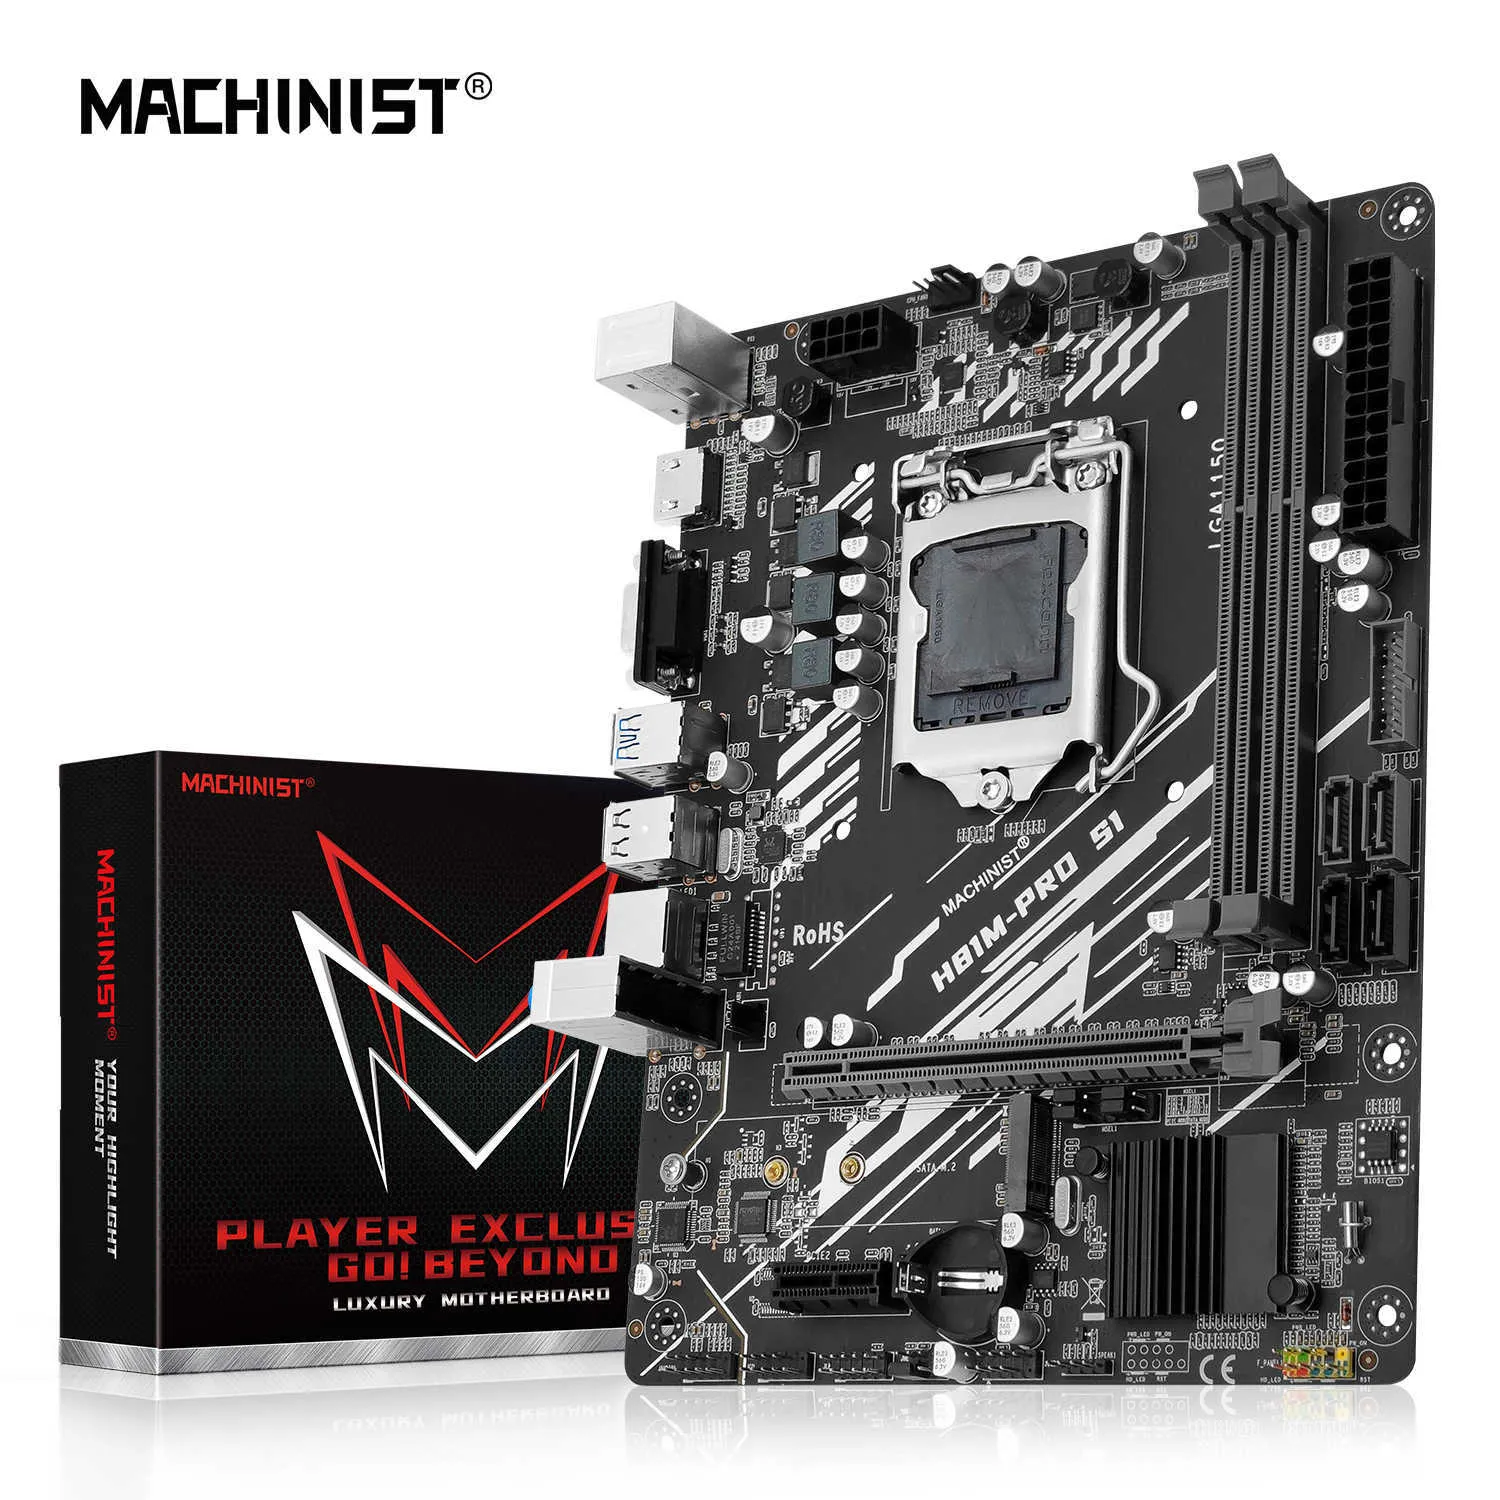 マシニストH81M Pro S1 H81 LGA 1150マザーボードNGFF M.2スロットサポートI3 I5 I7/Xeon E3 V3 CPUプロセッサDDR3デスクトップRAM